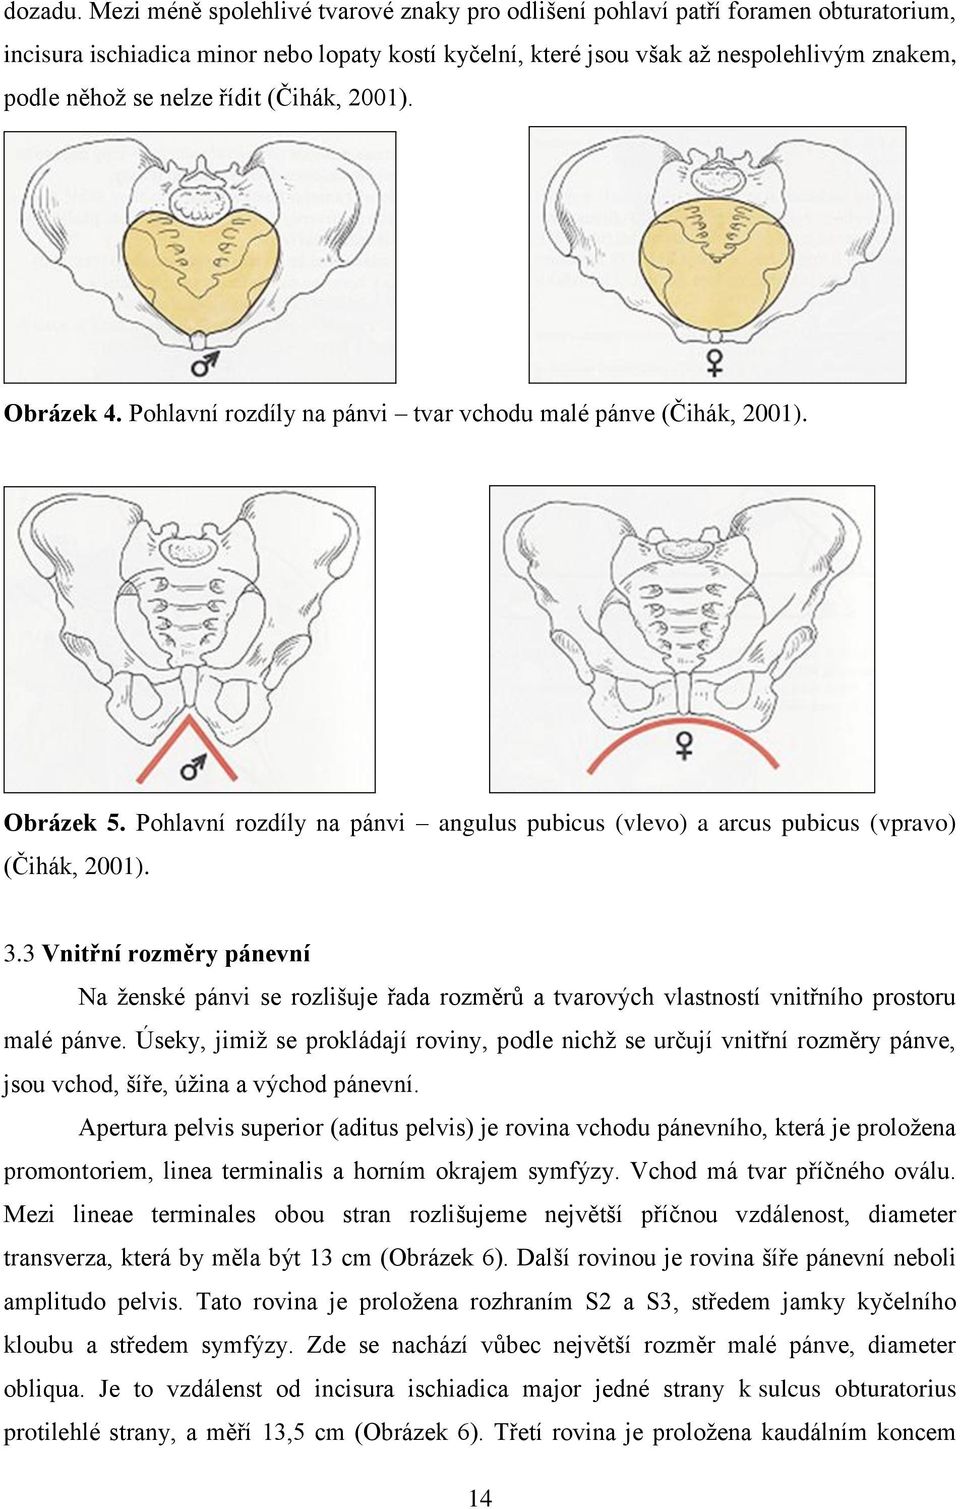 řídit (Čihák, 2001). Obrázek 4. Pohlavní rozdíly na pánvi tvar vchodu malé pánve (Čihák, 2001). Obrázek 5. Pohlavní rozdíly na pánvi angulus pubicus (vlevo) a arcus pubicus (vpravo) (Čihák, 2001). 3.